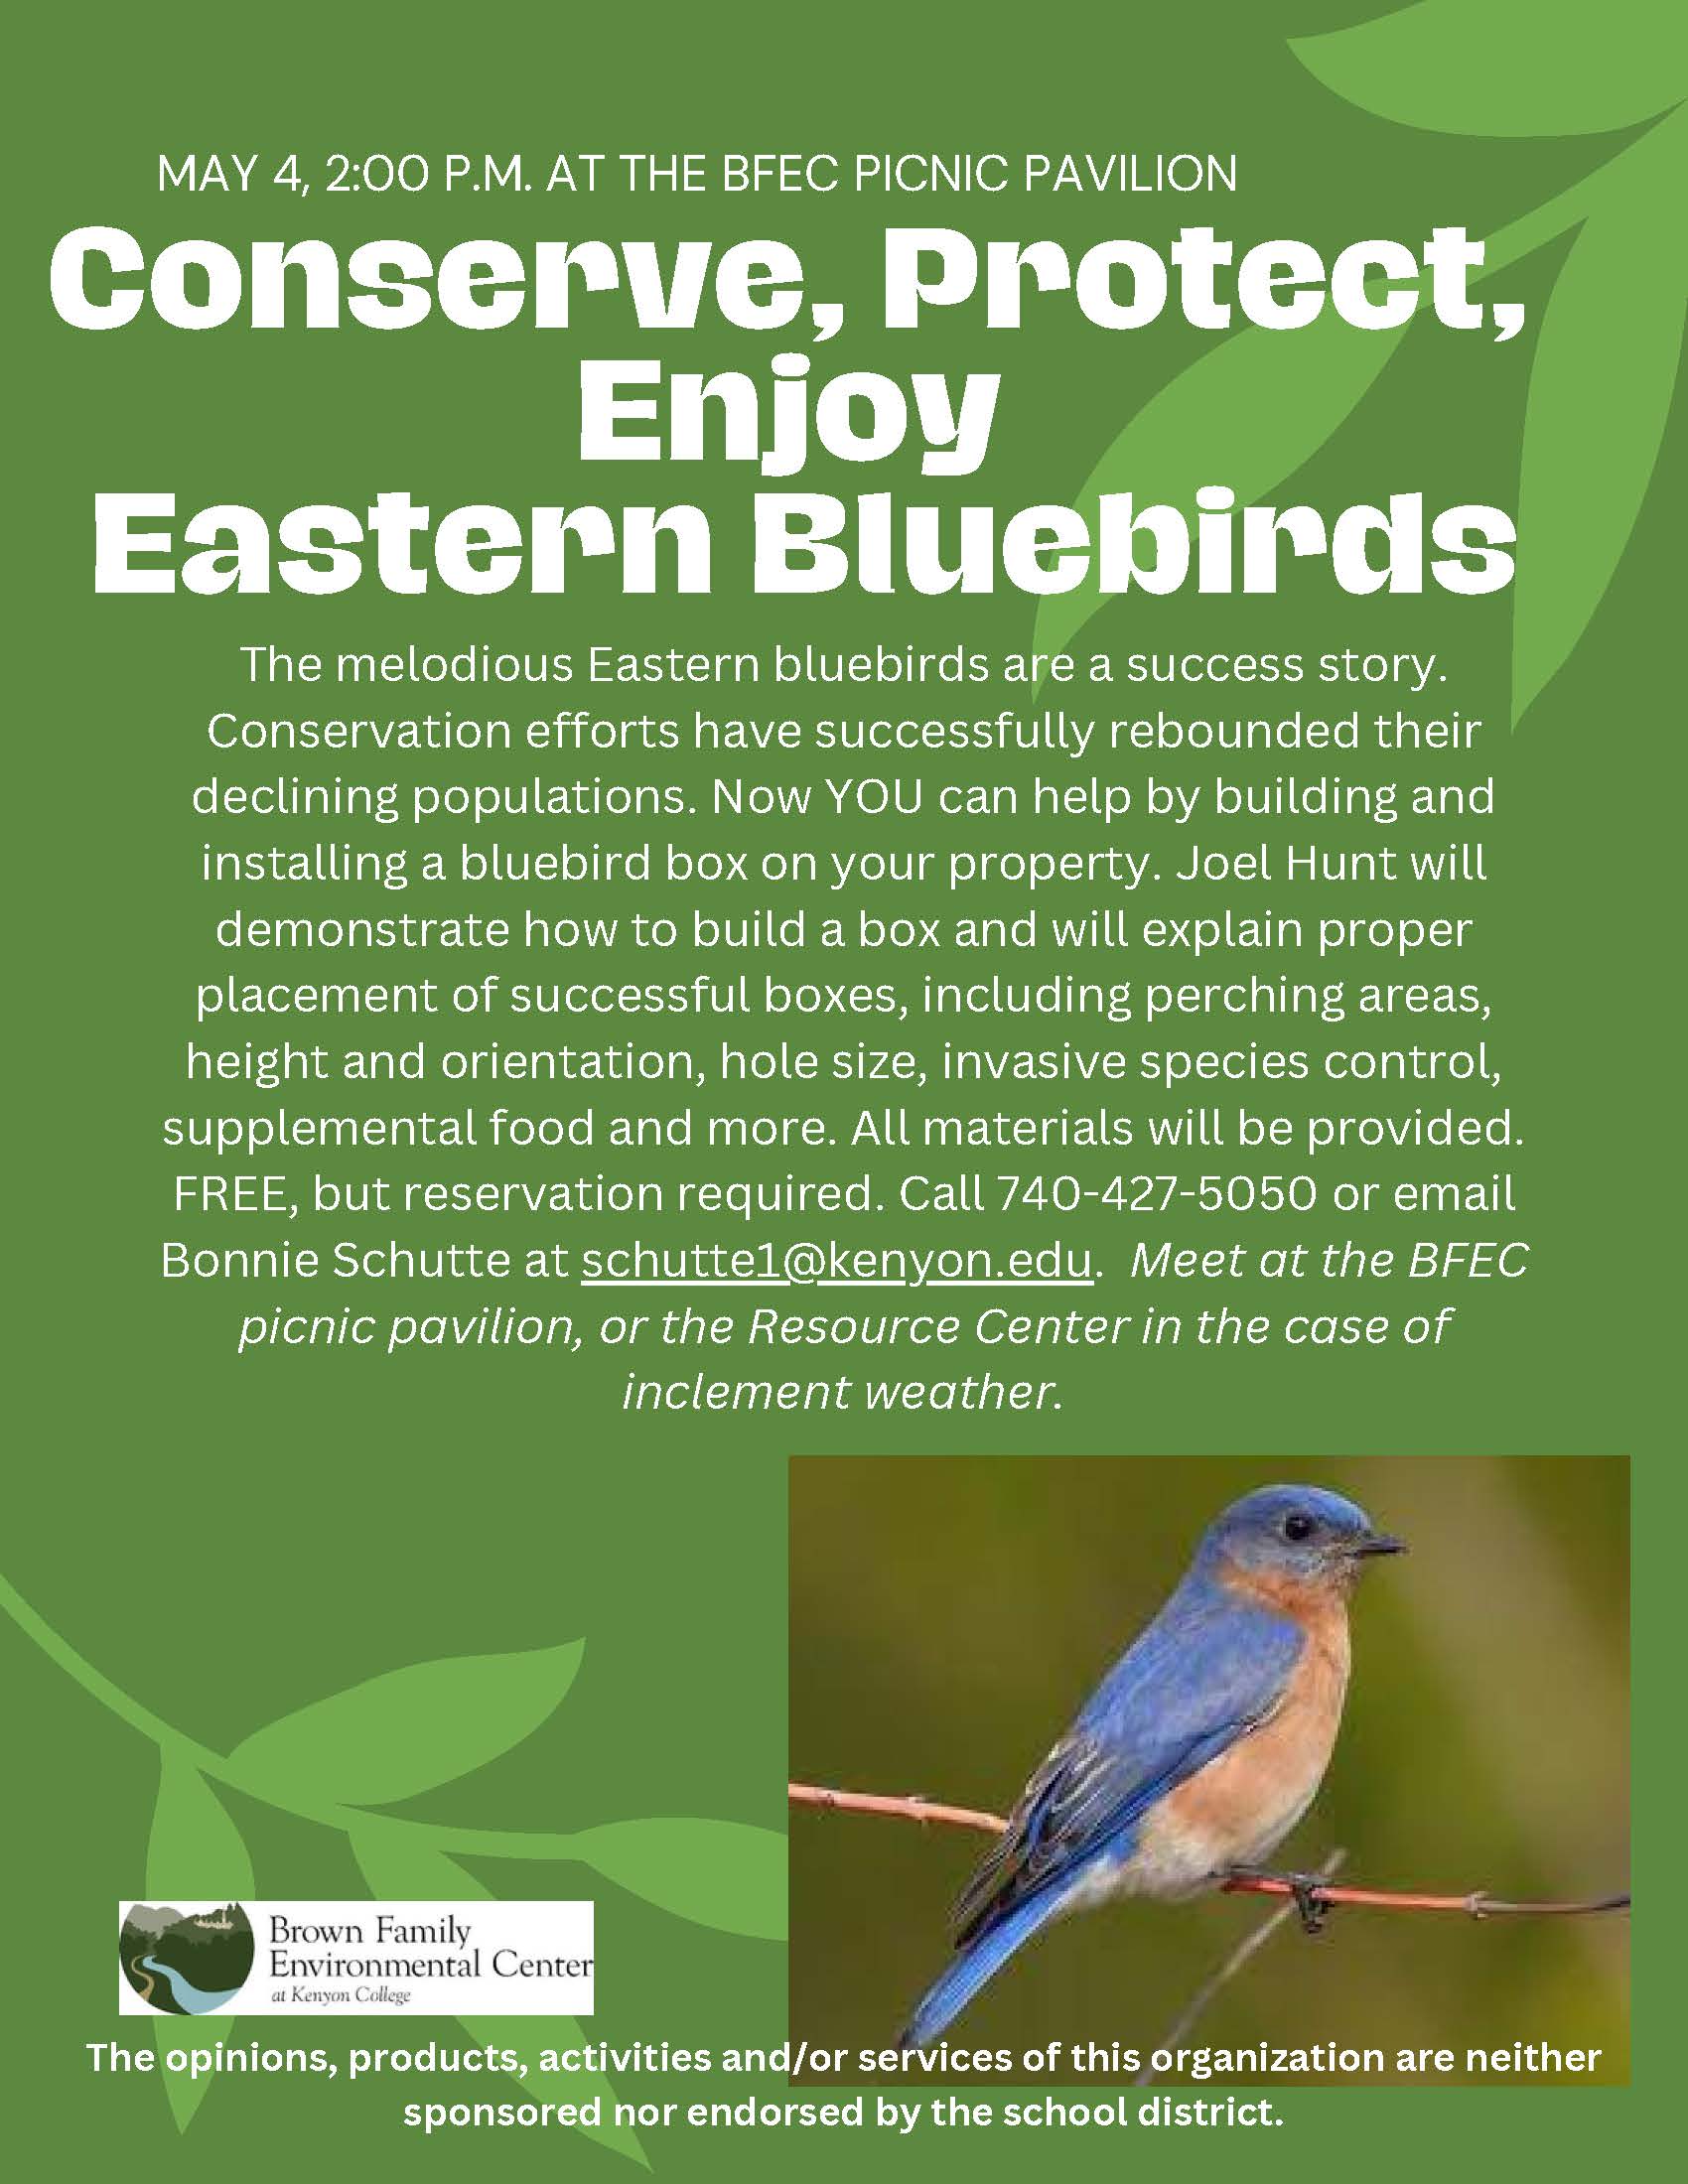 Enjoy Eastern Bluebirds Brown Family Environmental Center button link.